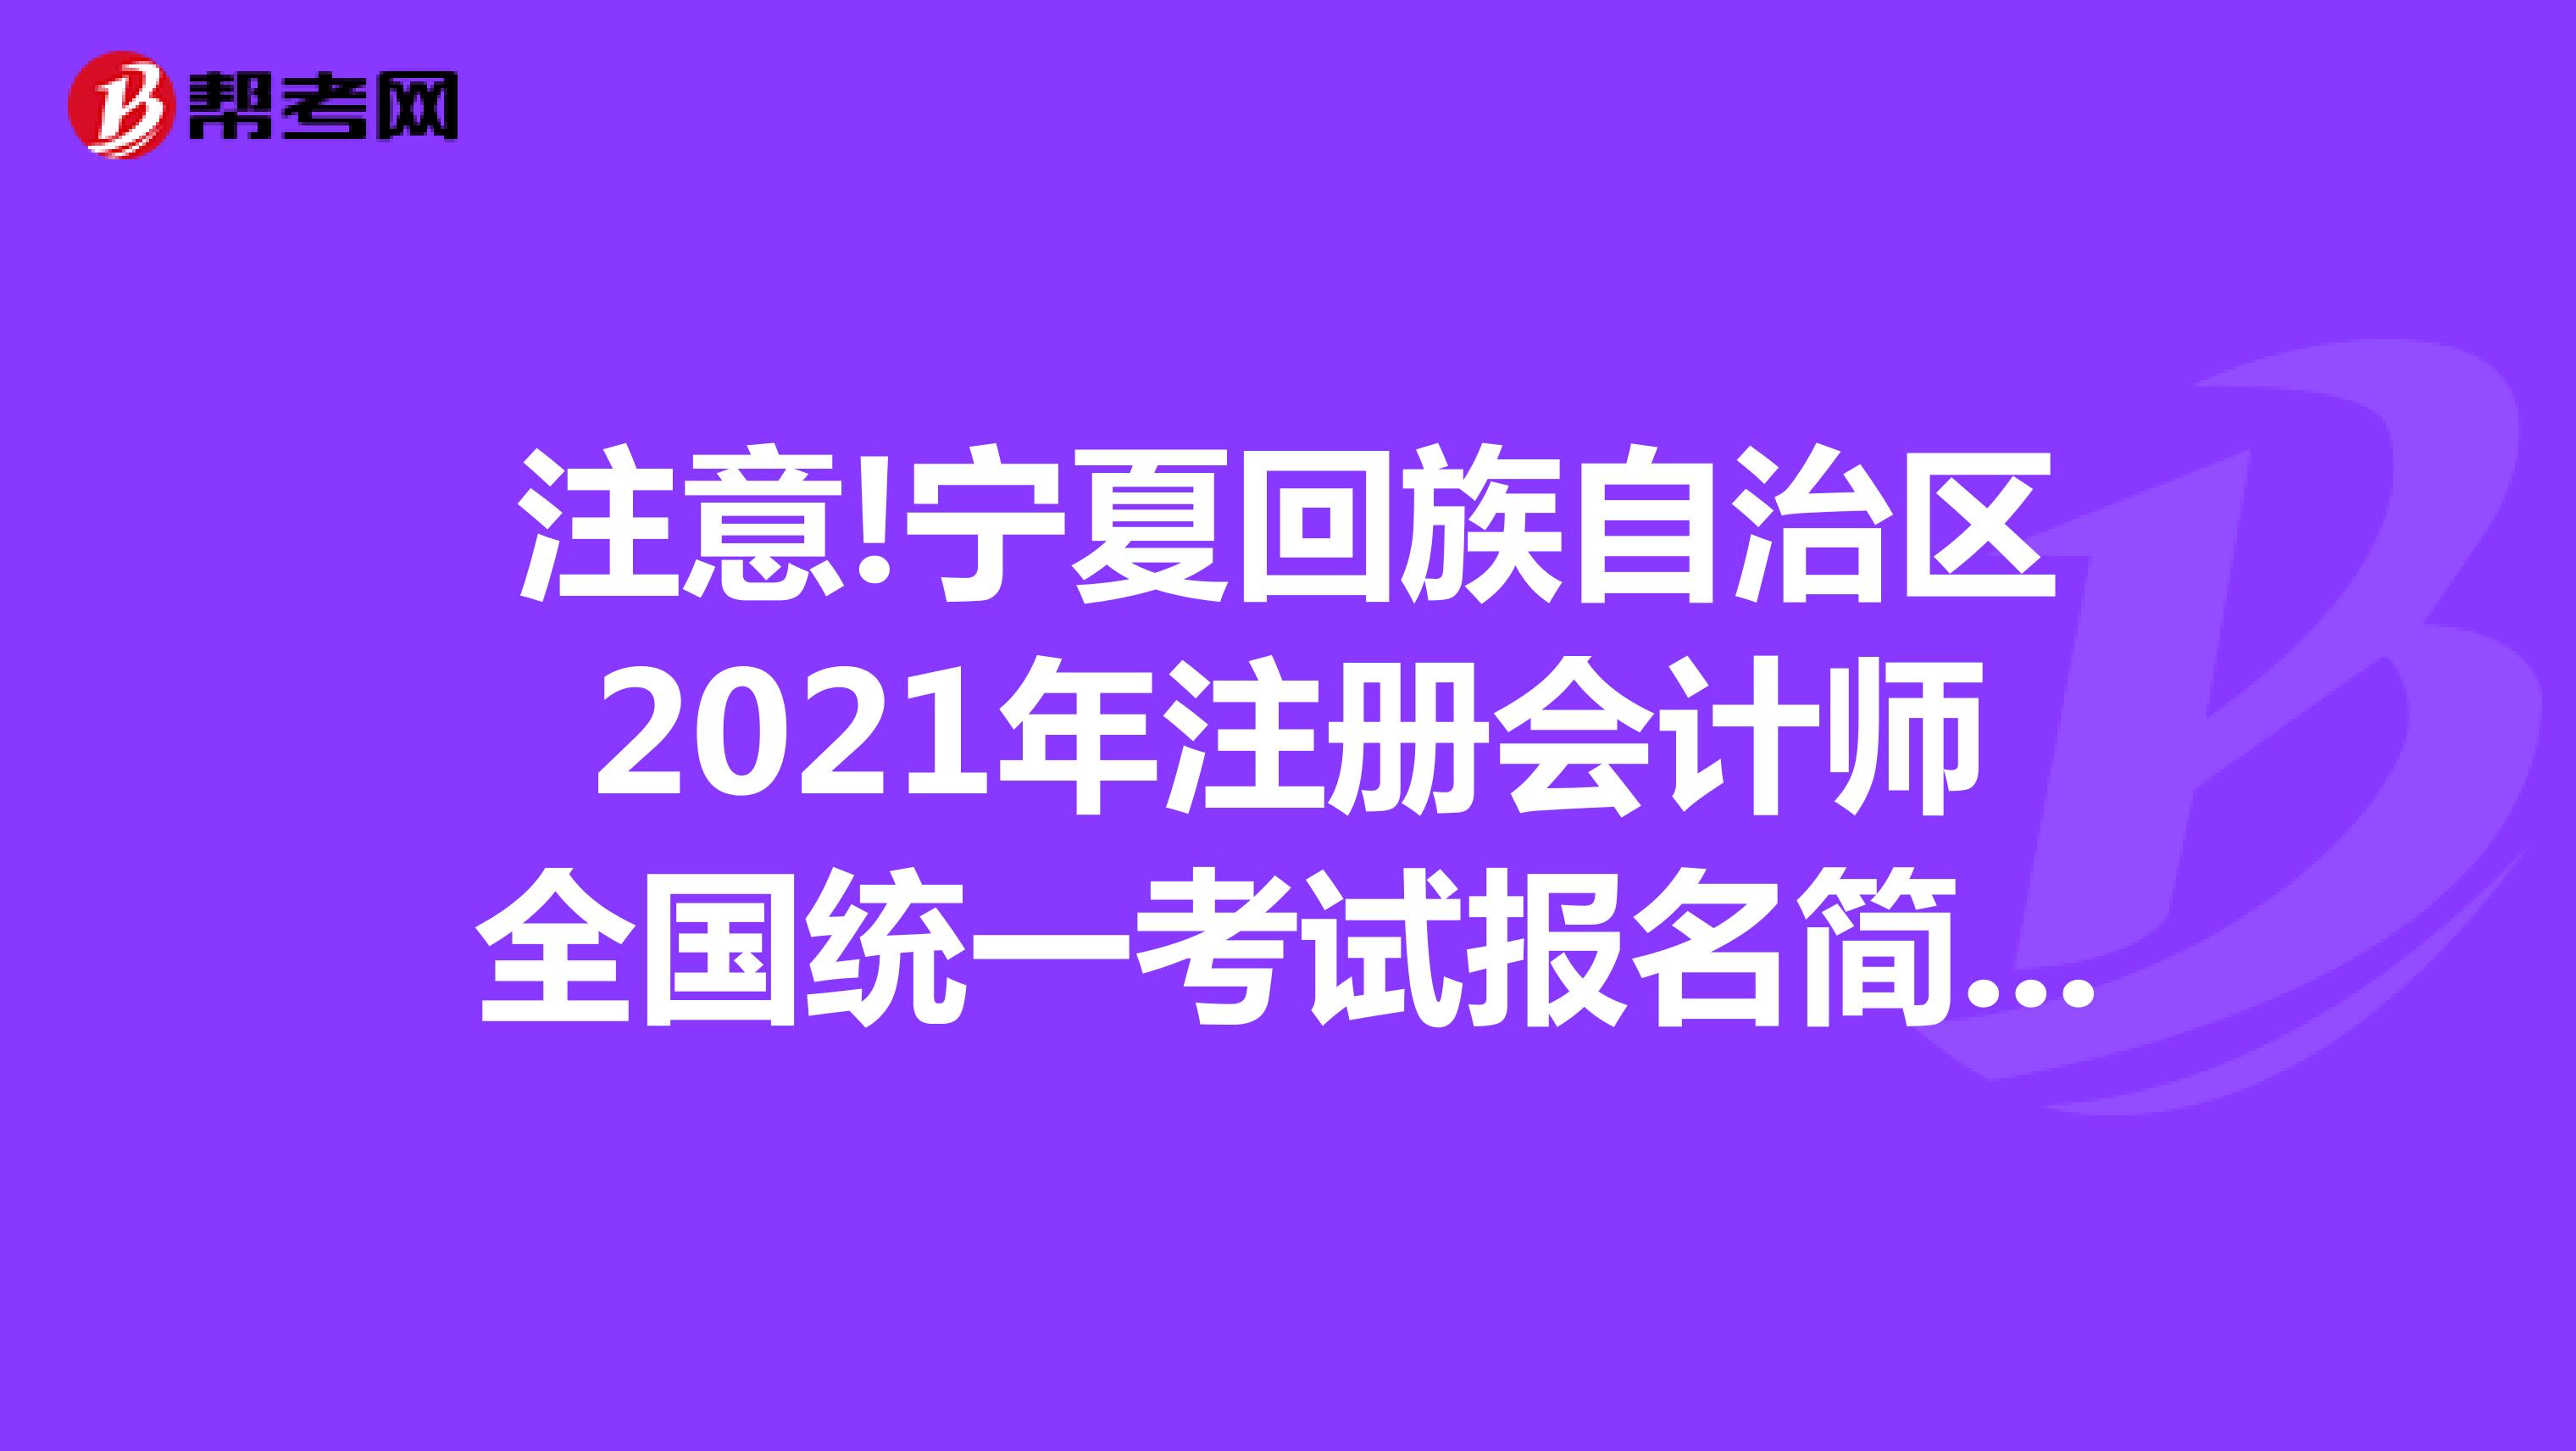 注意!宁夏回族自治区2021年注册会计师全国统一考试报名简章的通知已发布